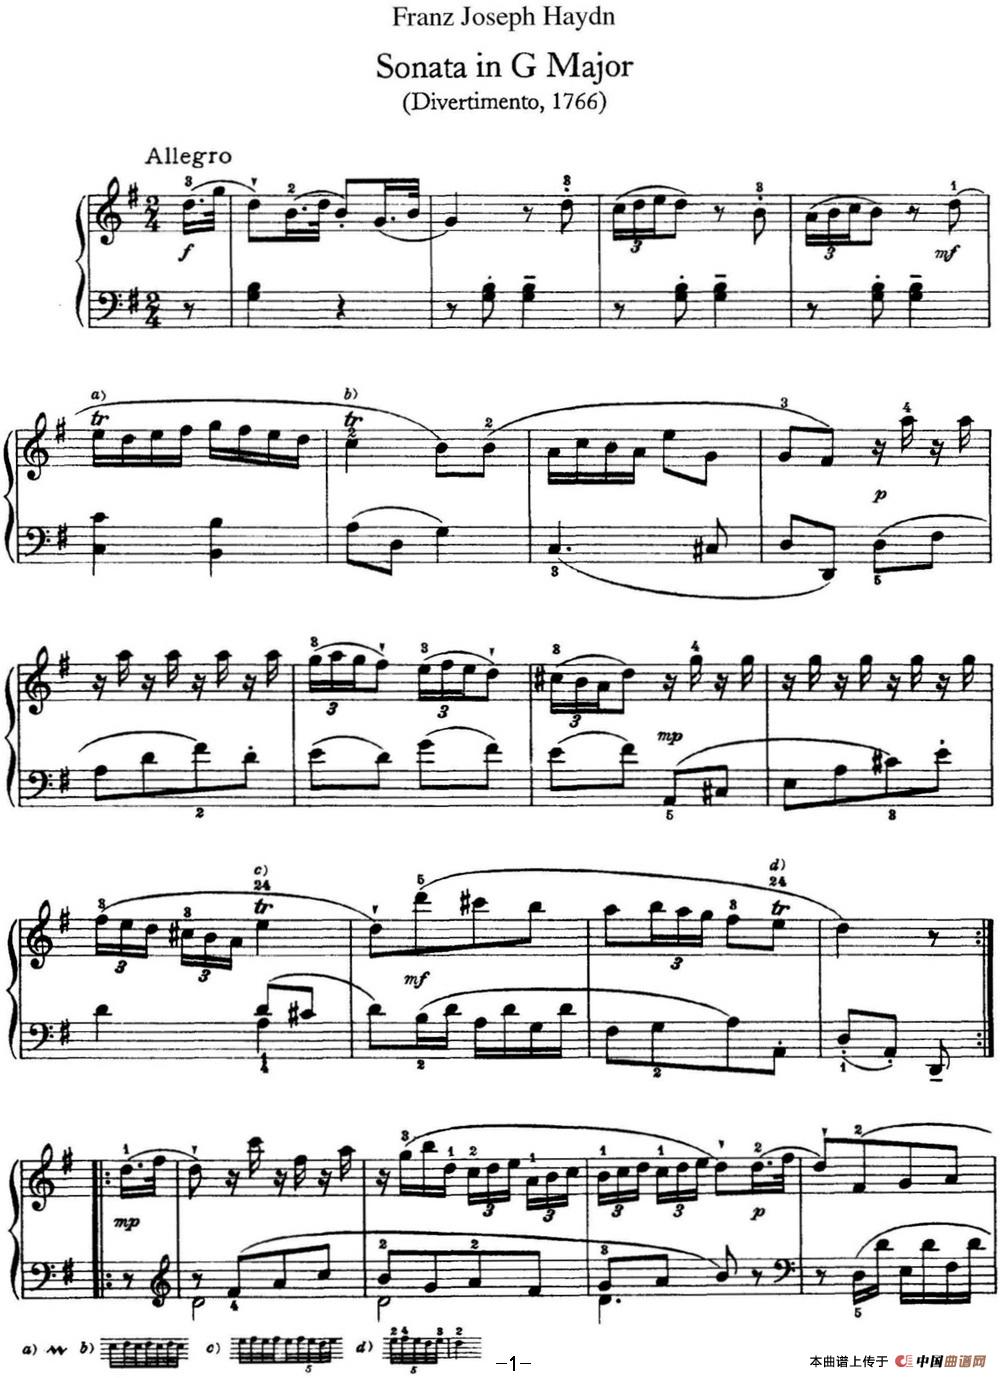 《海顿 钢琴奏鸣曲 Hob XVI 8 Divertimento G major》钢琴曲谱图分享